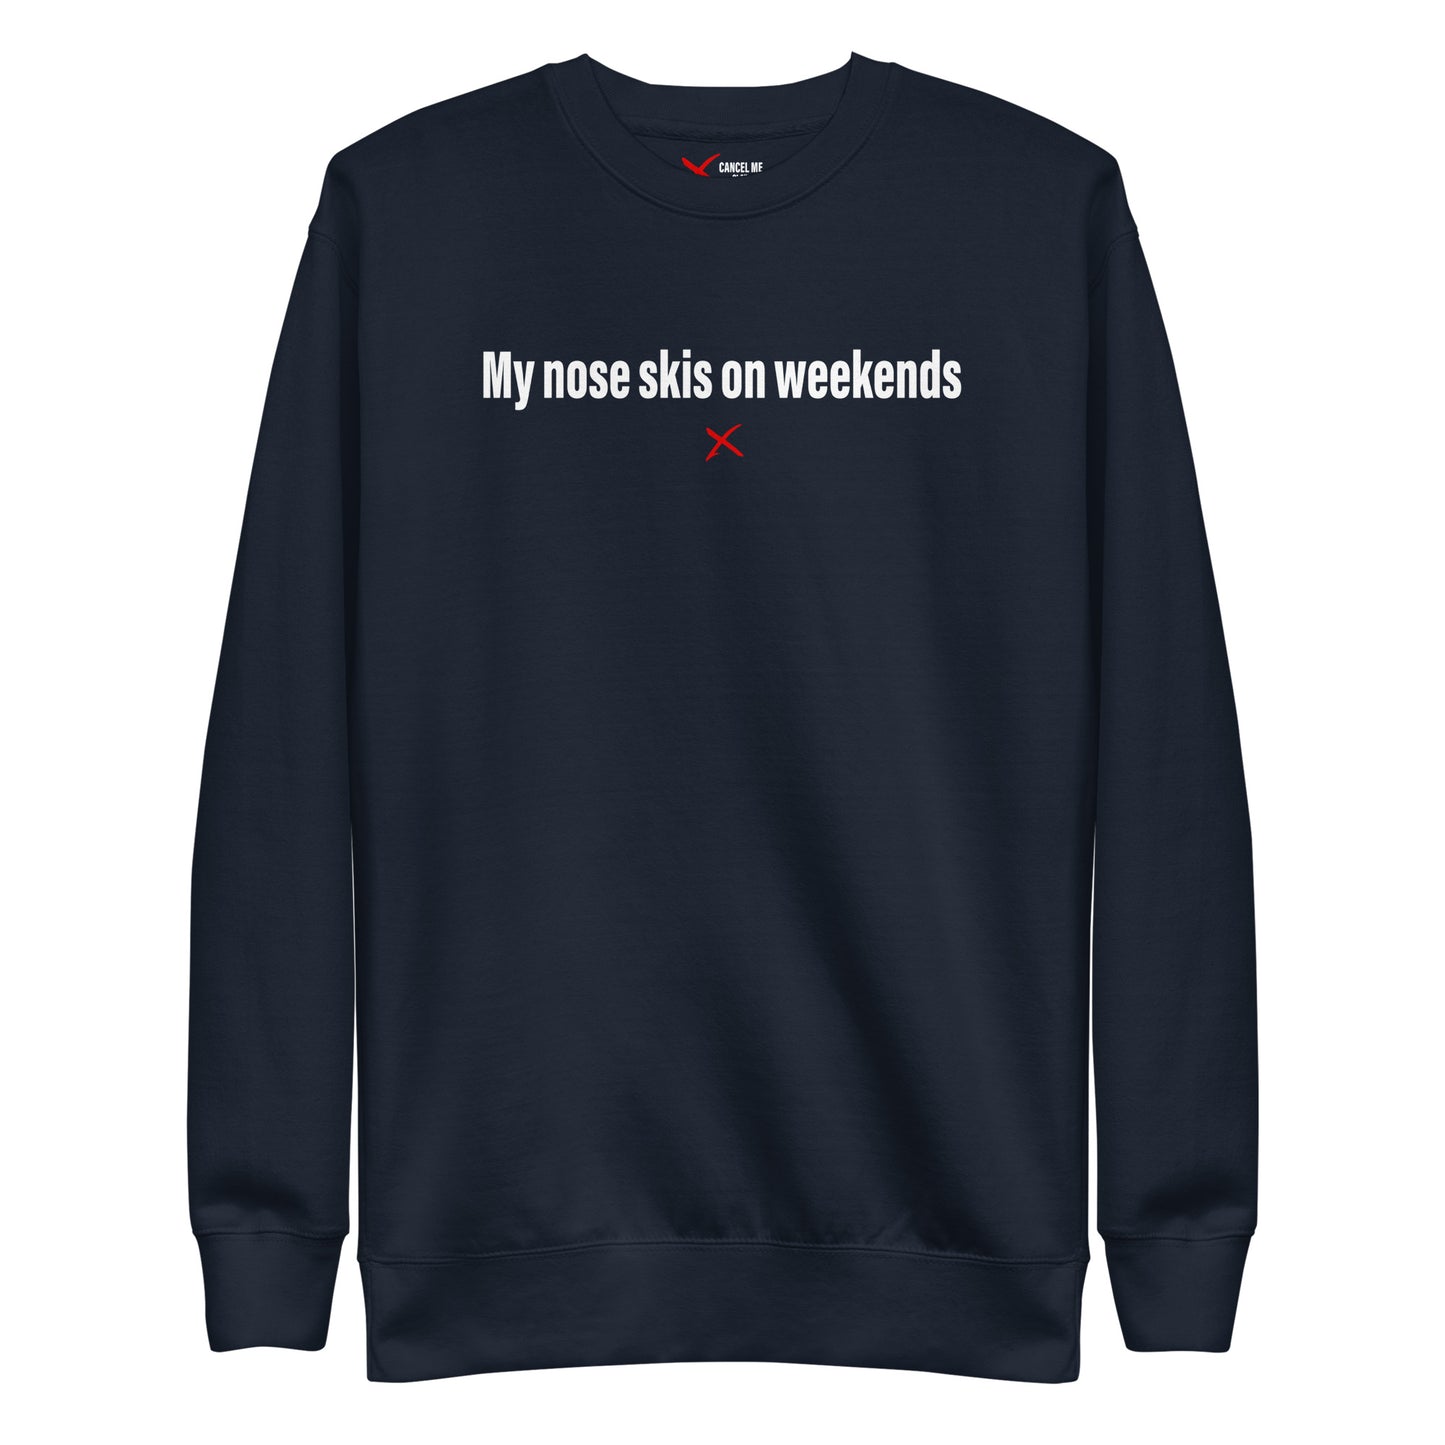 My nose skis on weekends - Sweatshirt